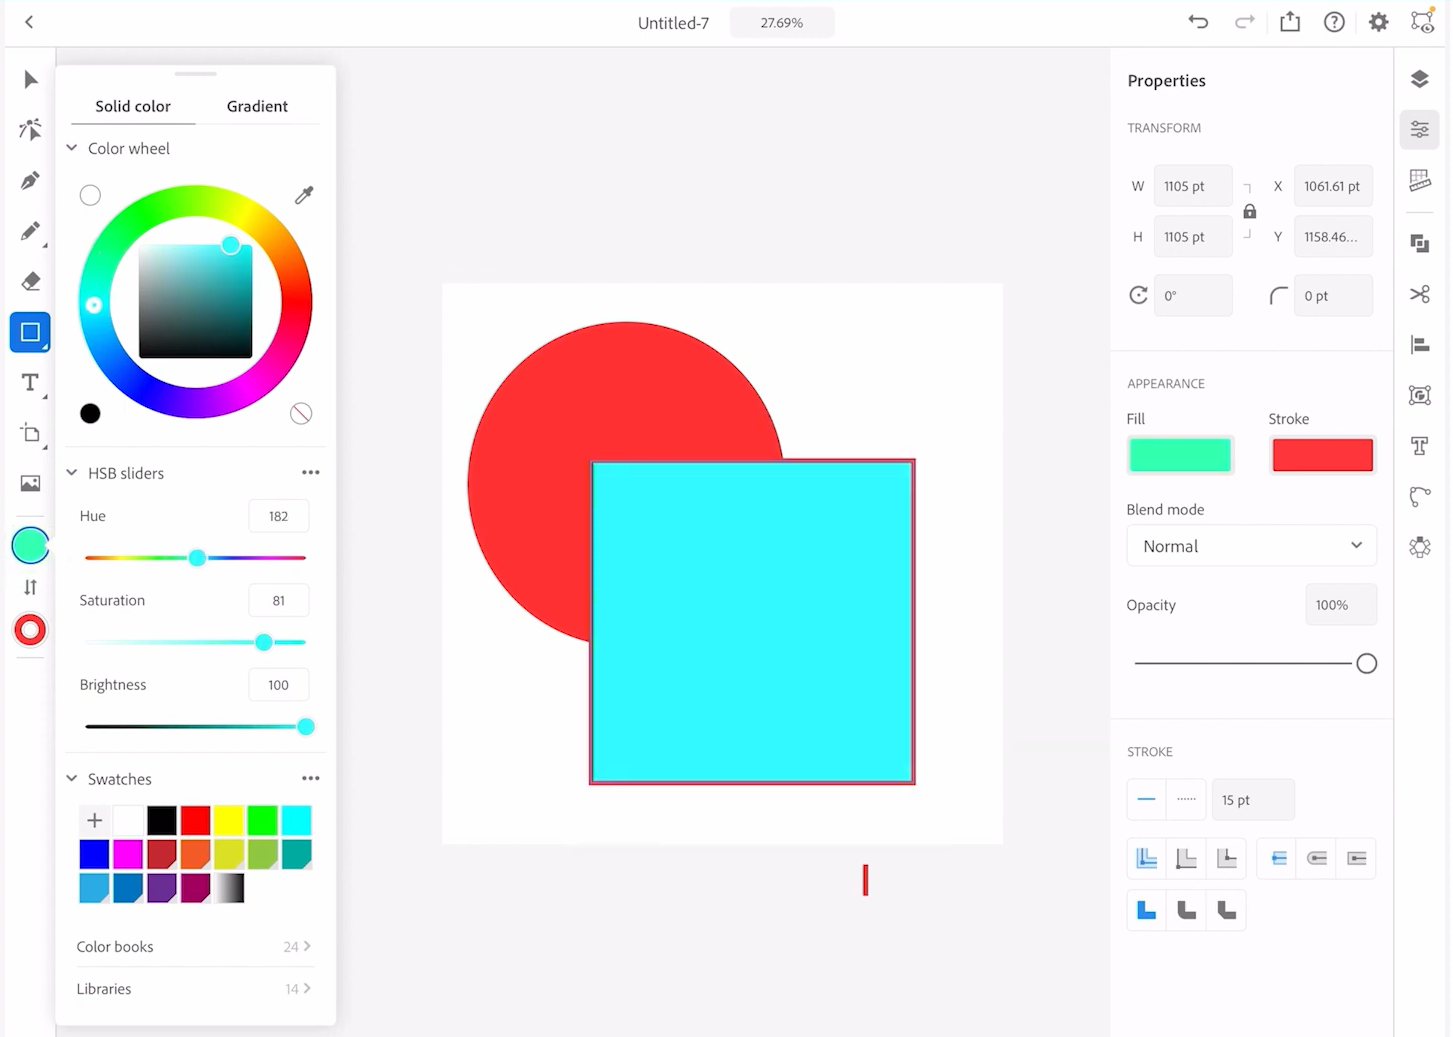 Interface do app Illustrator. Há dois vetores no centro da imagem: um círculo e um quadrado. Nas laterais esquerda e direita, há os menus de edição, que mostram tanto edição de cores quanto de tamanho, opacidade e aparência dos vetores.